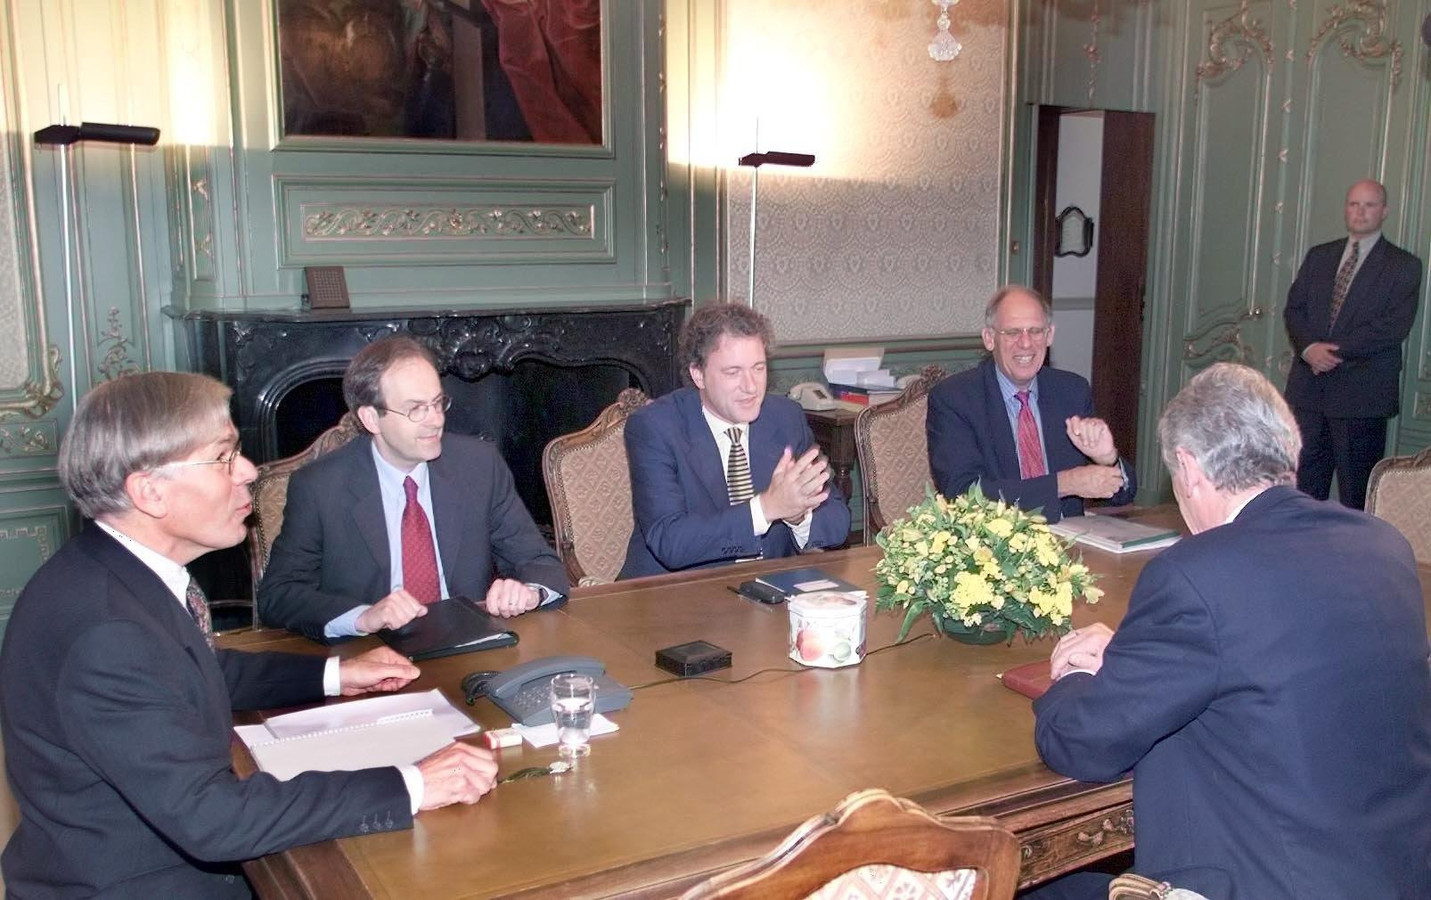 Informateur Tjeenk Willink spreekt in 1999 in de Eerste Kamer met de fractievoorzitters Melkert (PvdA), De Graaf (D66), Dijkstal (VVD) en premier Kok.